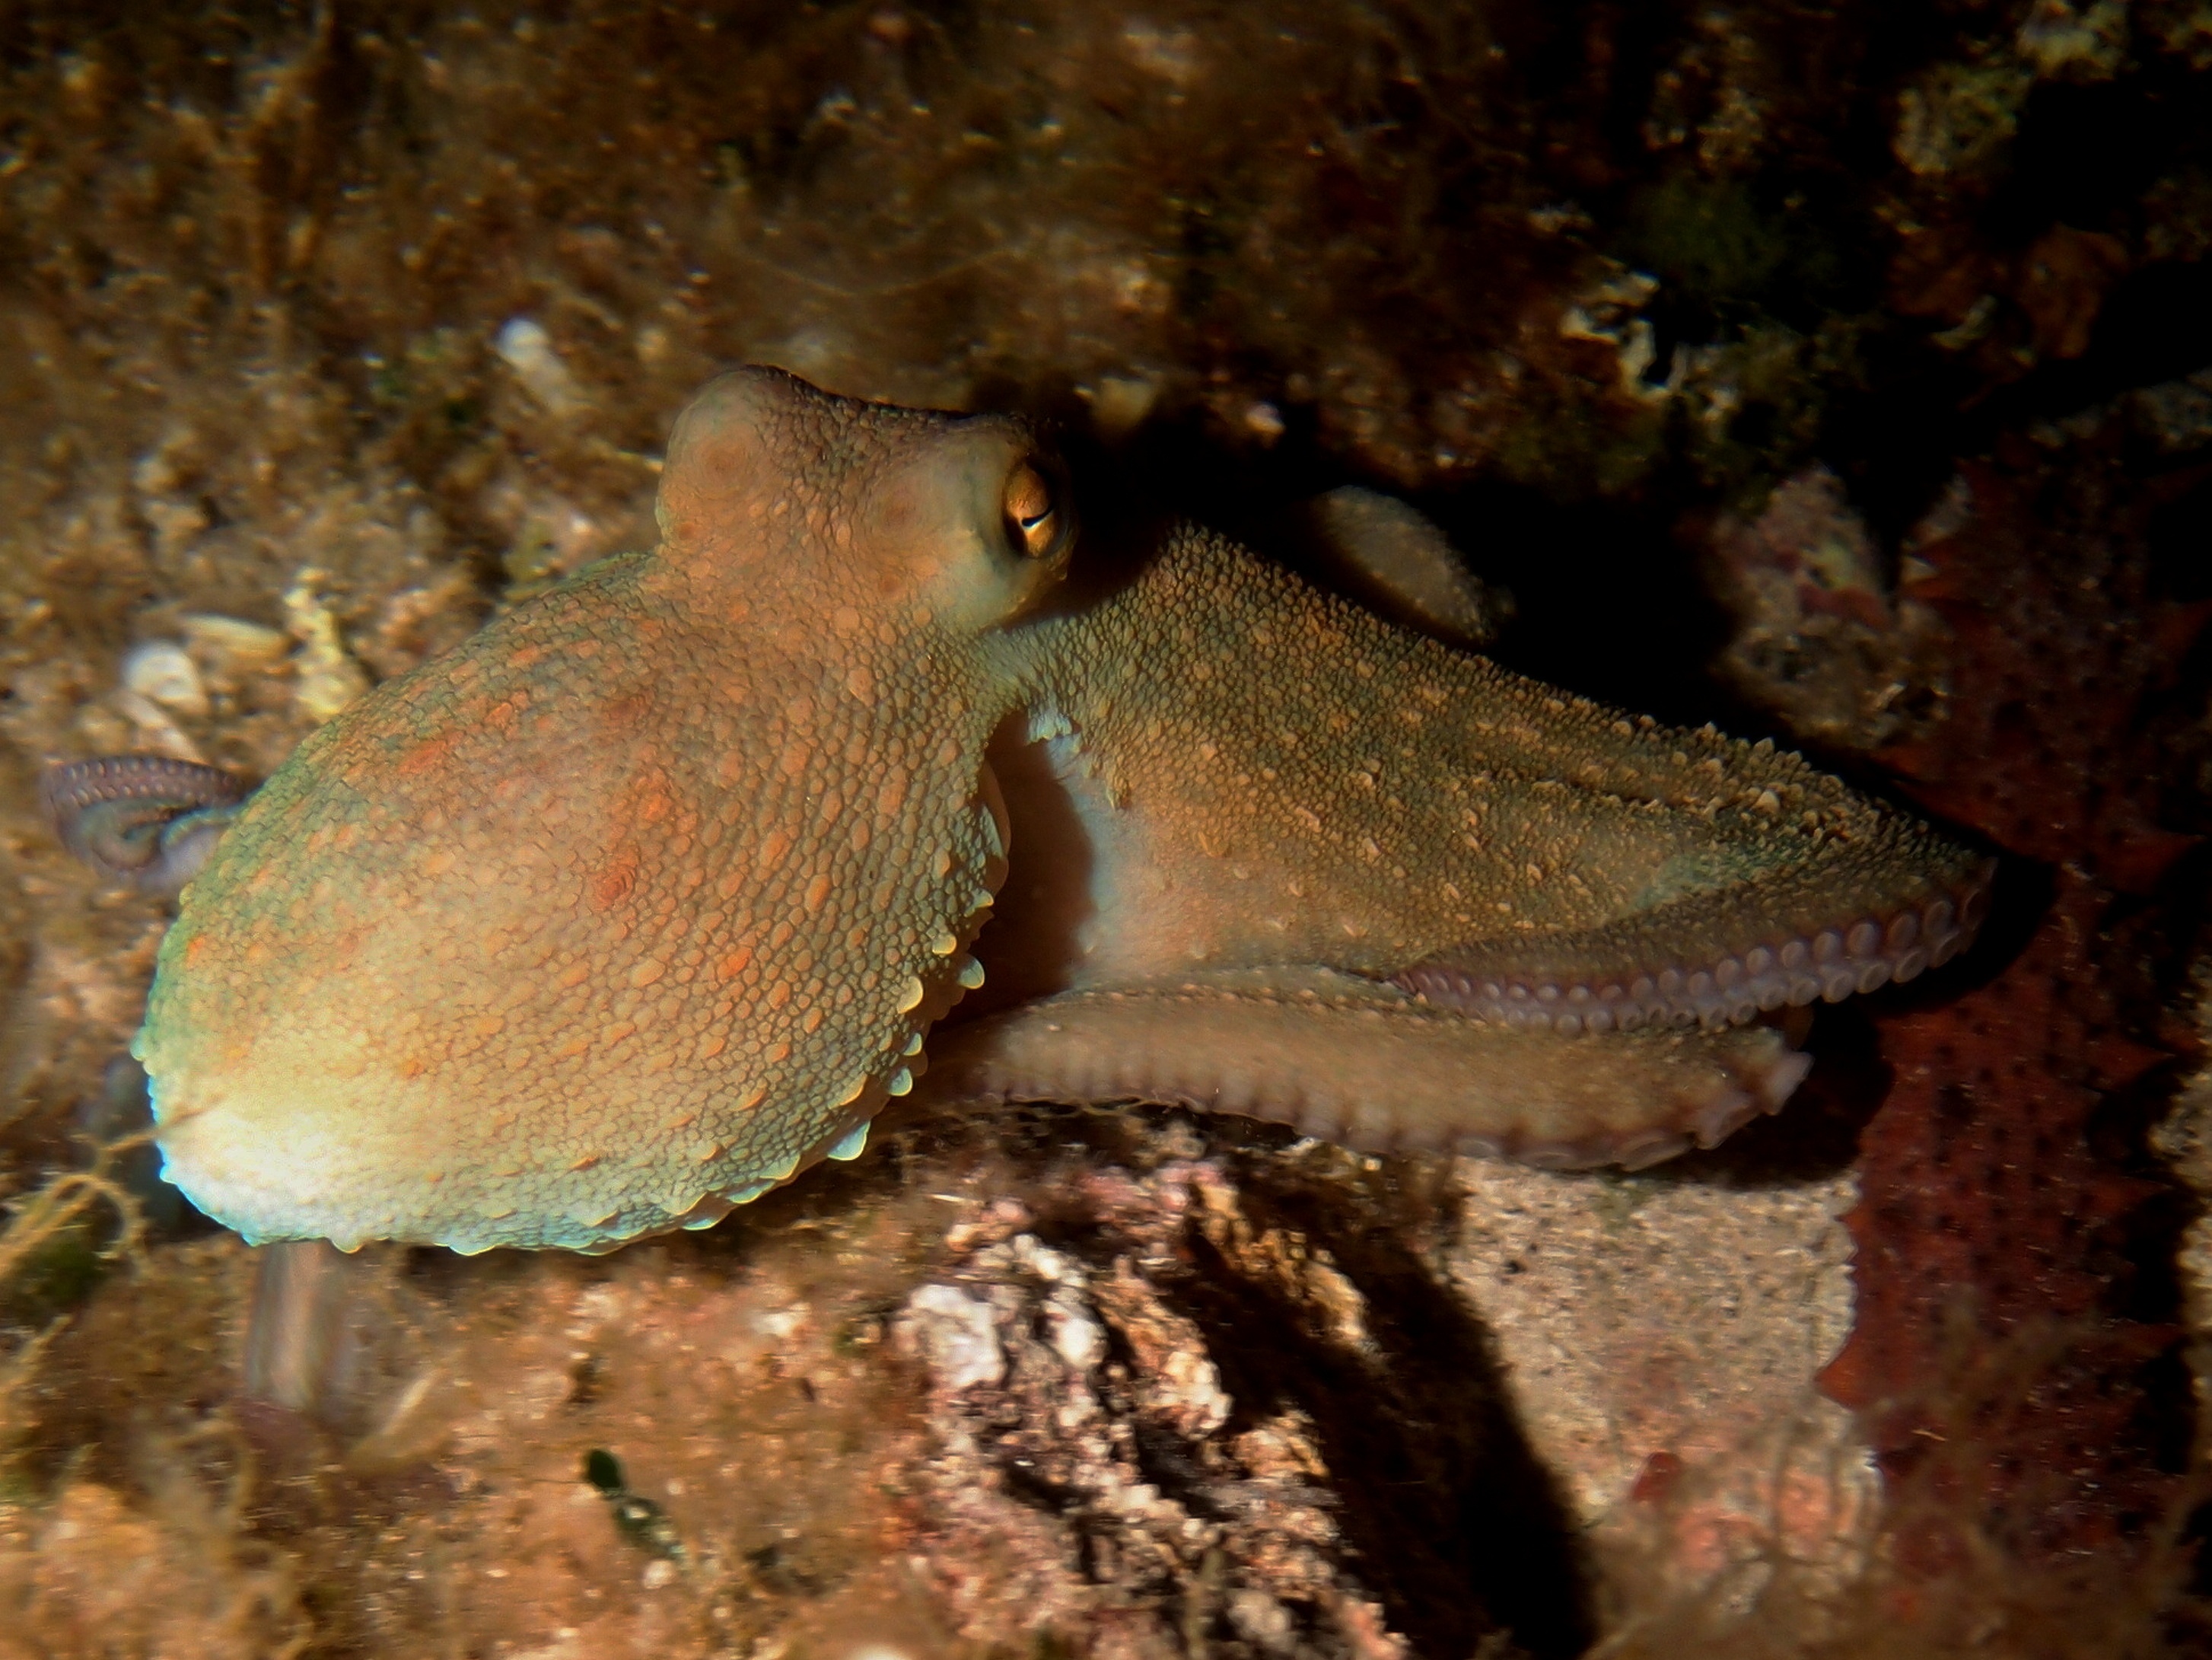 Chobotnice v hloubce 8 m, Olympus XZ-1, chorvatský ostrov Dugi Otok 2014, přisvícení lampou BETALIGHT 50 W